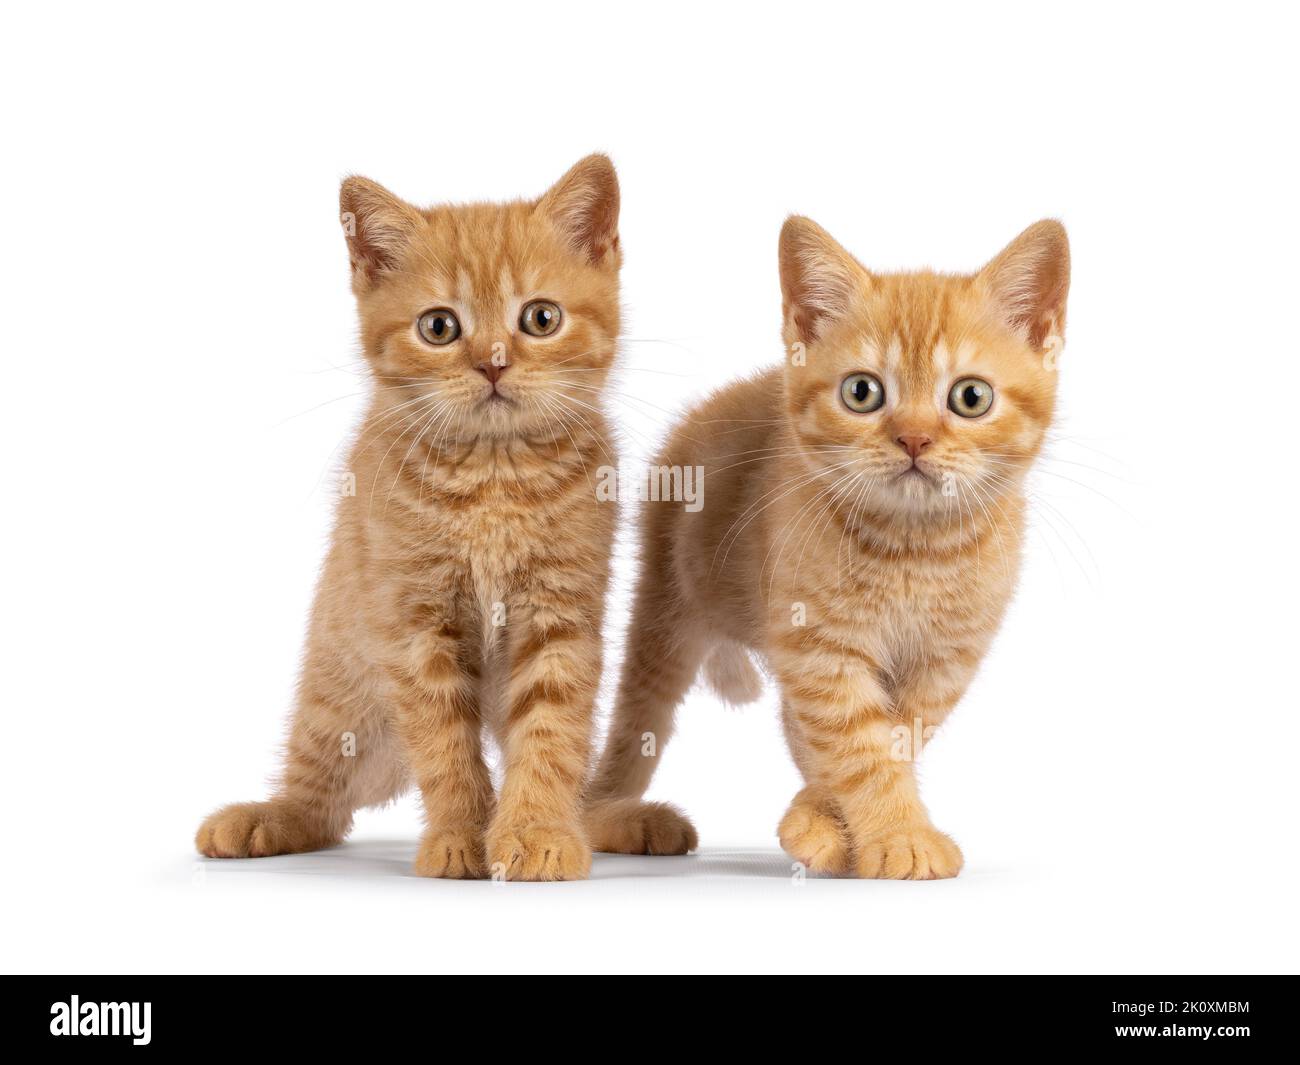 2 chatons Red British Shorthair, debout les uns à côté des autres face à camara. Les deux sont directement à la caméra. Isolé sur un fond blanc. Banque D'Images